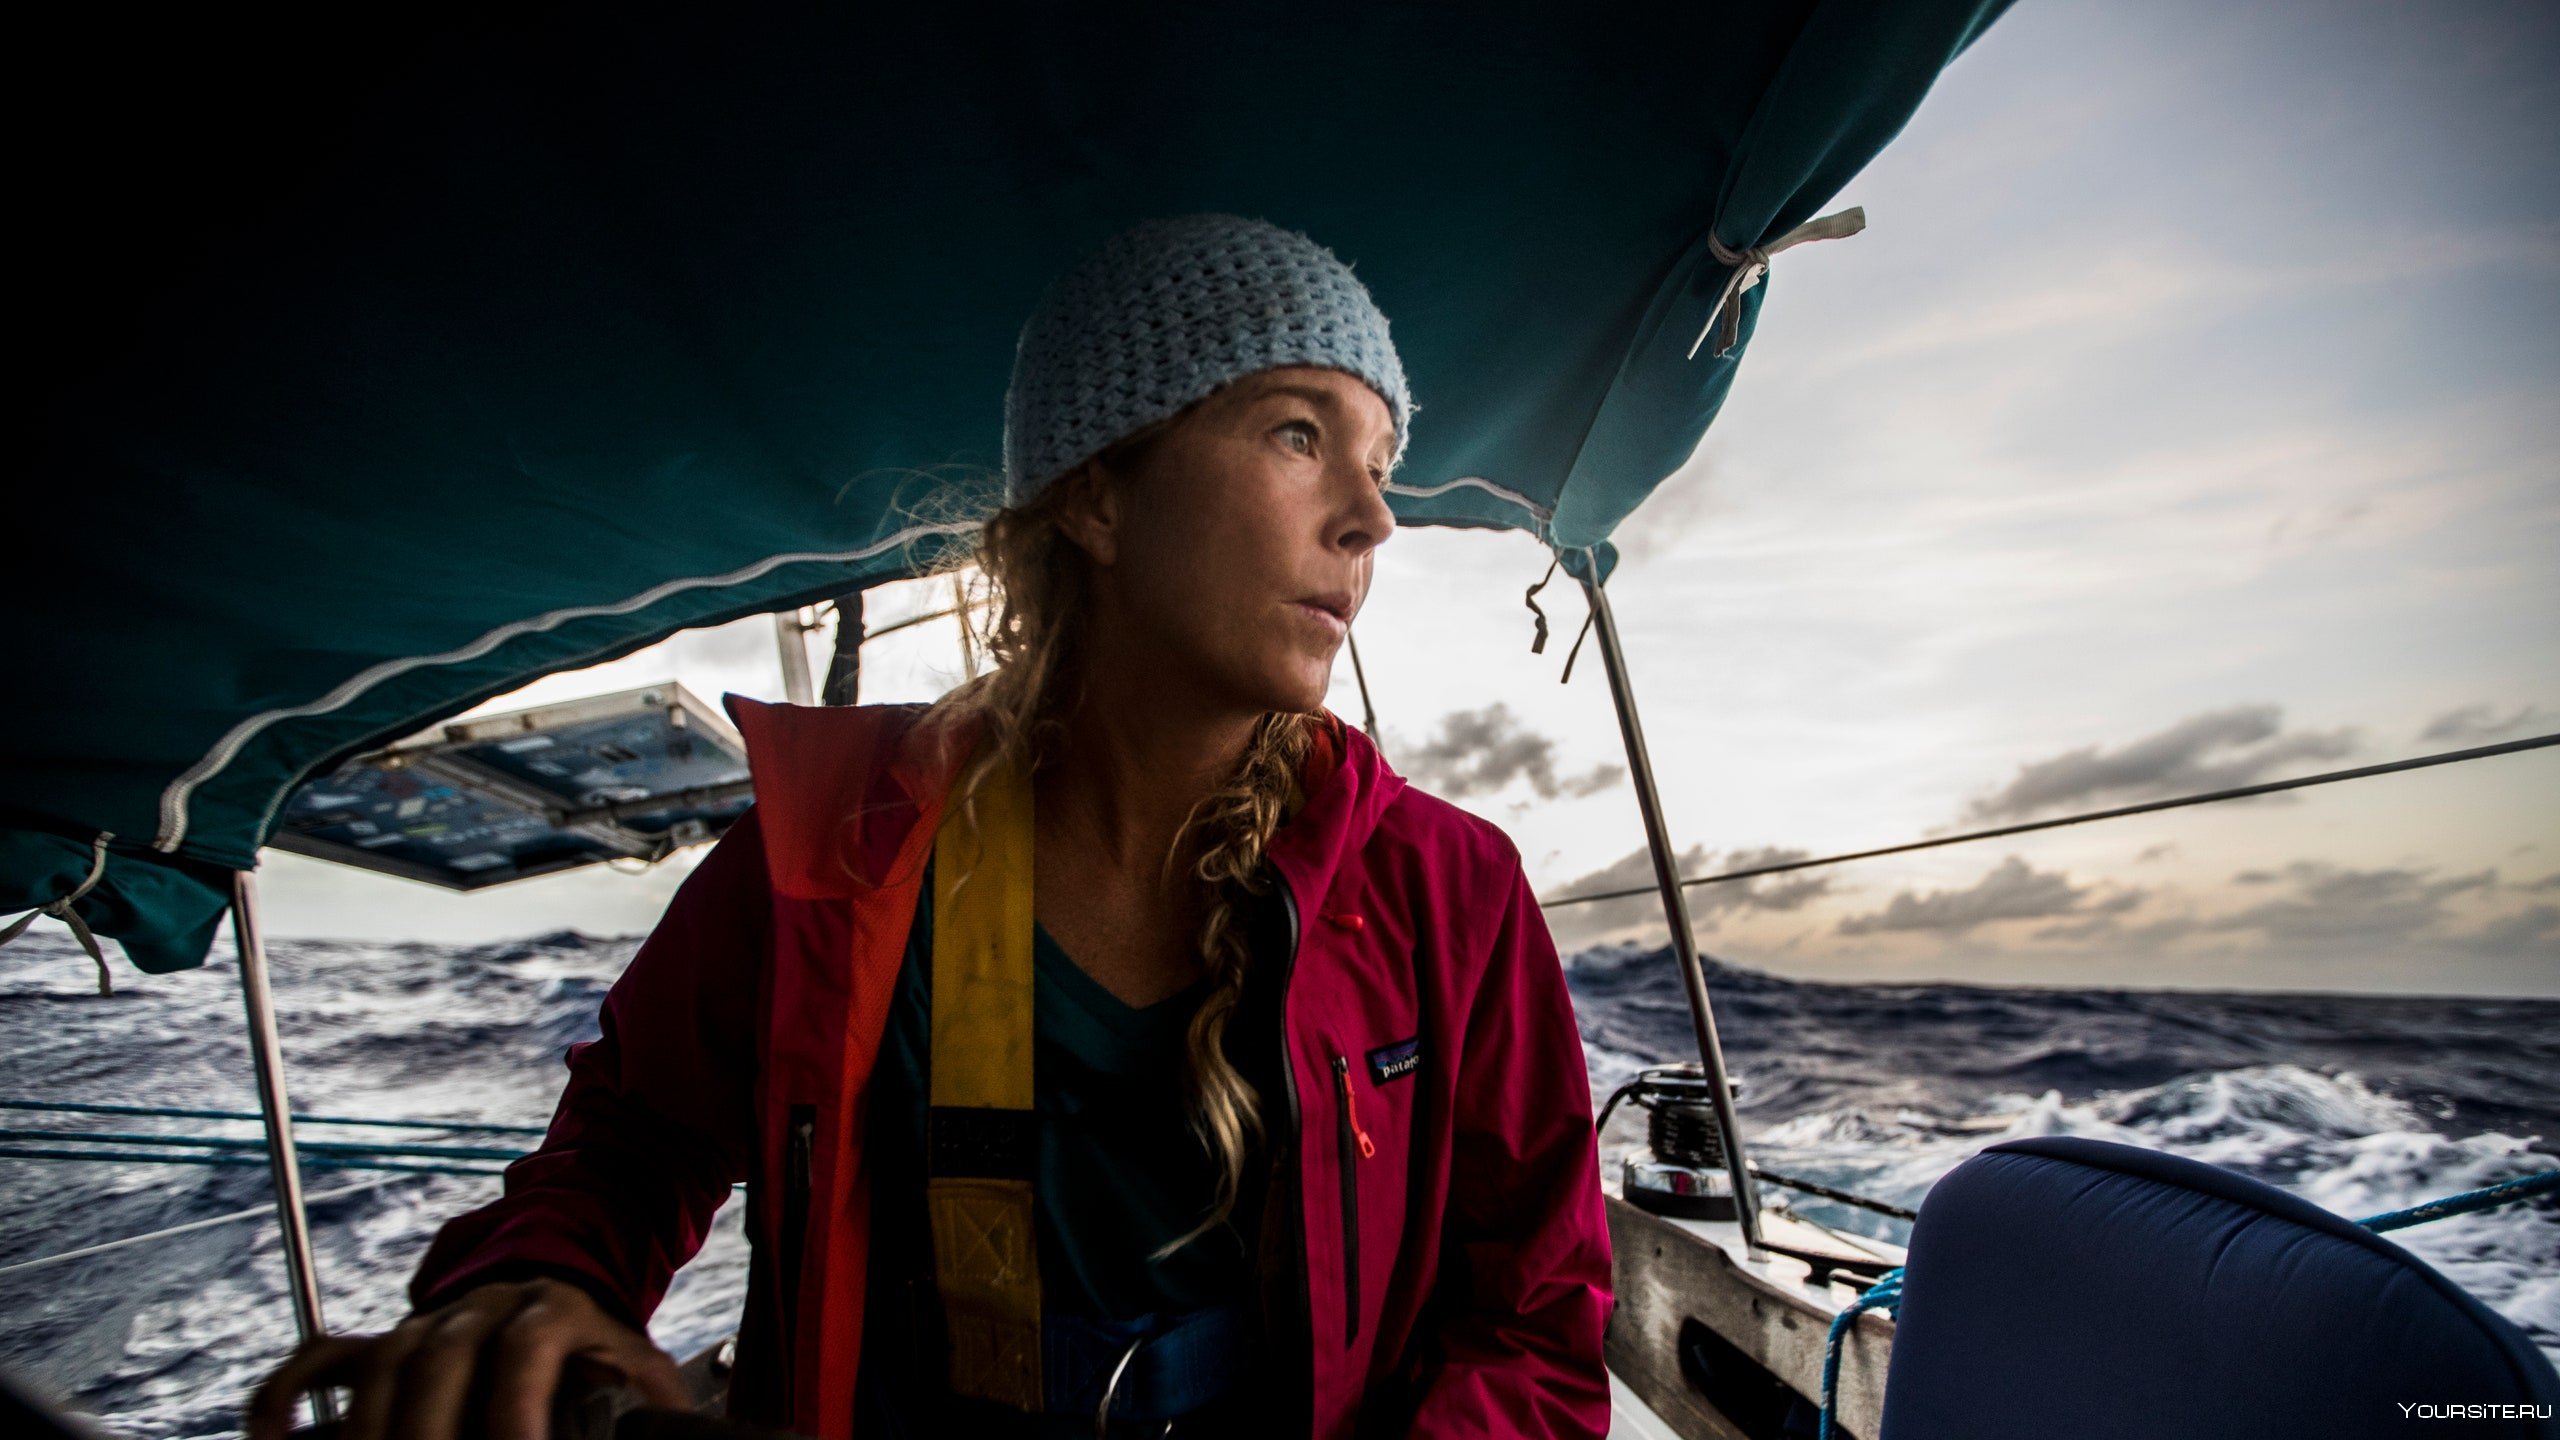 Норвежец переплывший тихий океан. Лиз Кларк путешественница. Одежда для кругосветного путешествия.